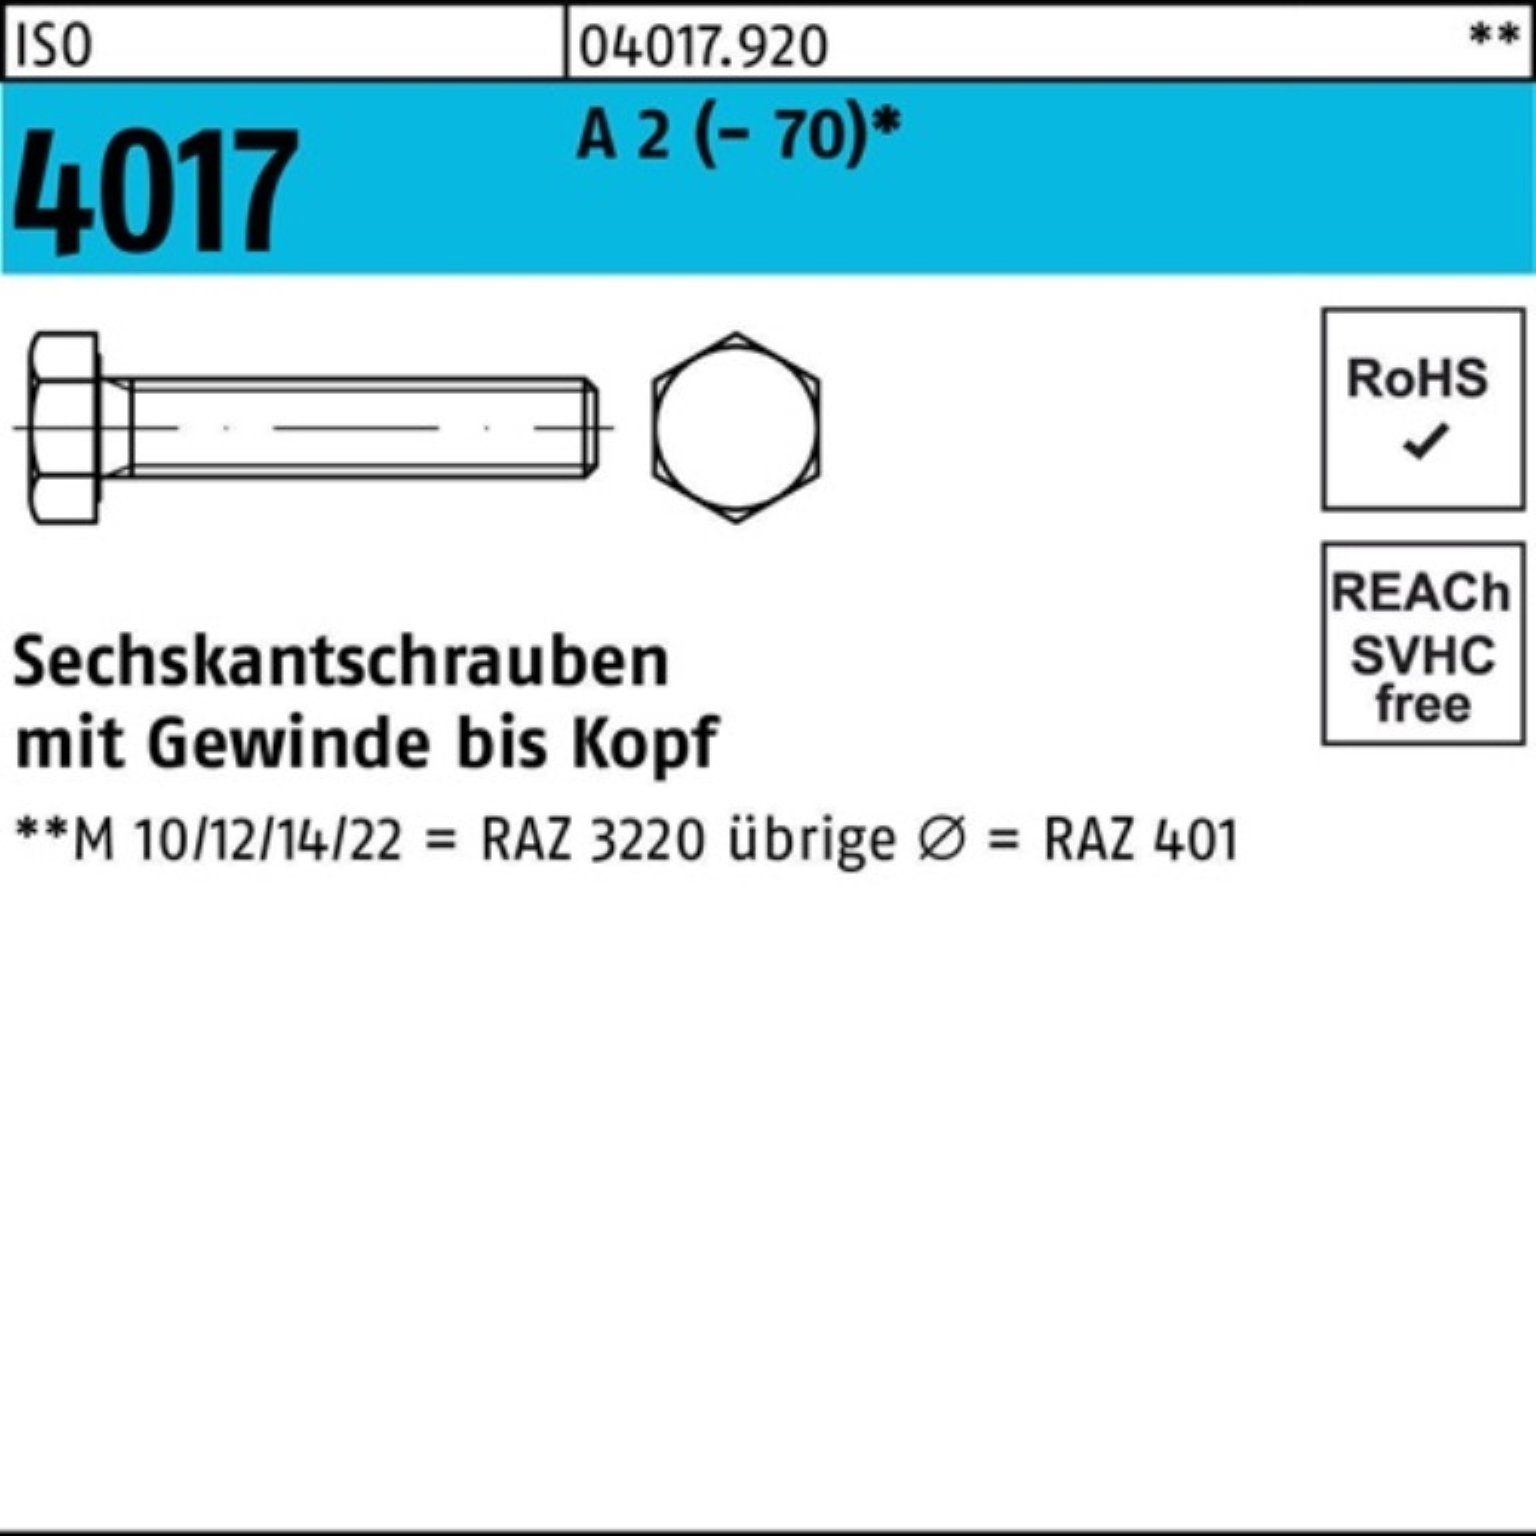 Bufab Sechskantschraube 100er Pack Sechskantschraube ISO 4017 VG M20x 150 A 2 (70) 10 Stück | Schrauben